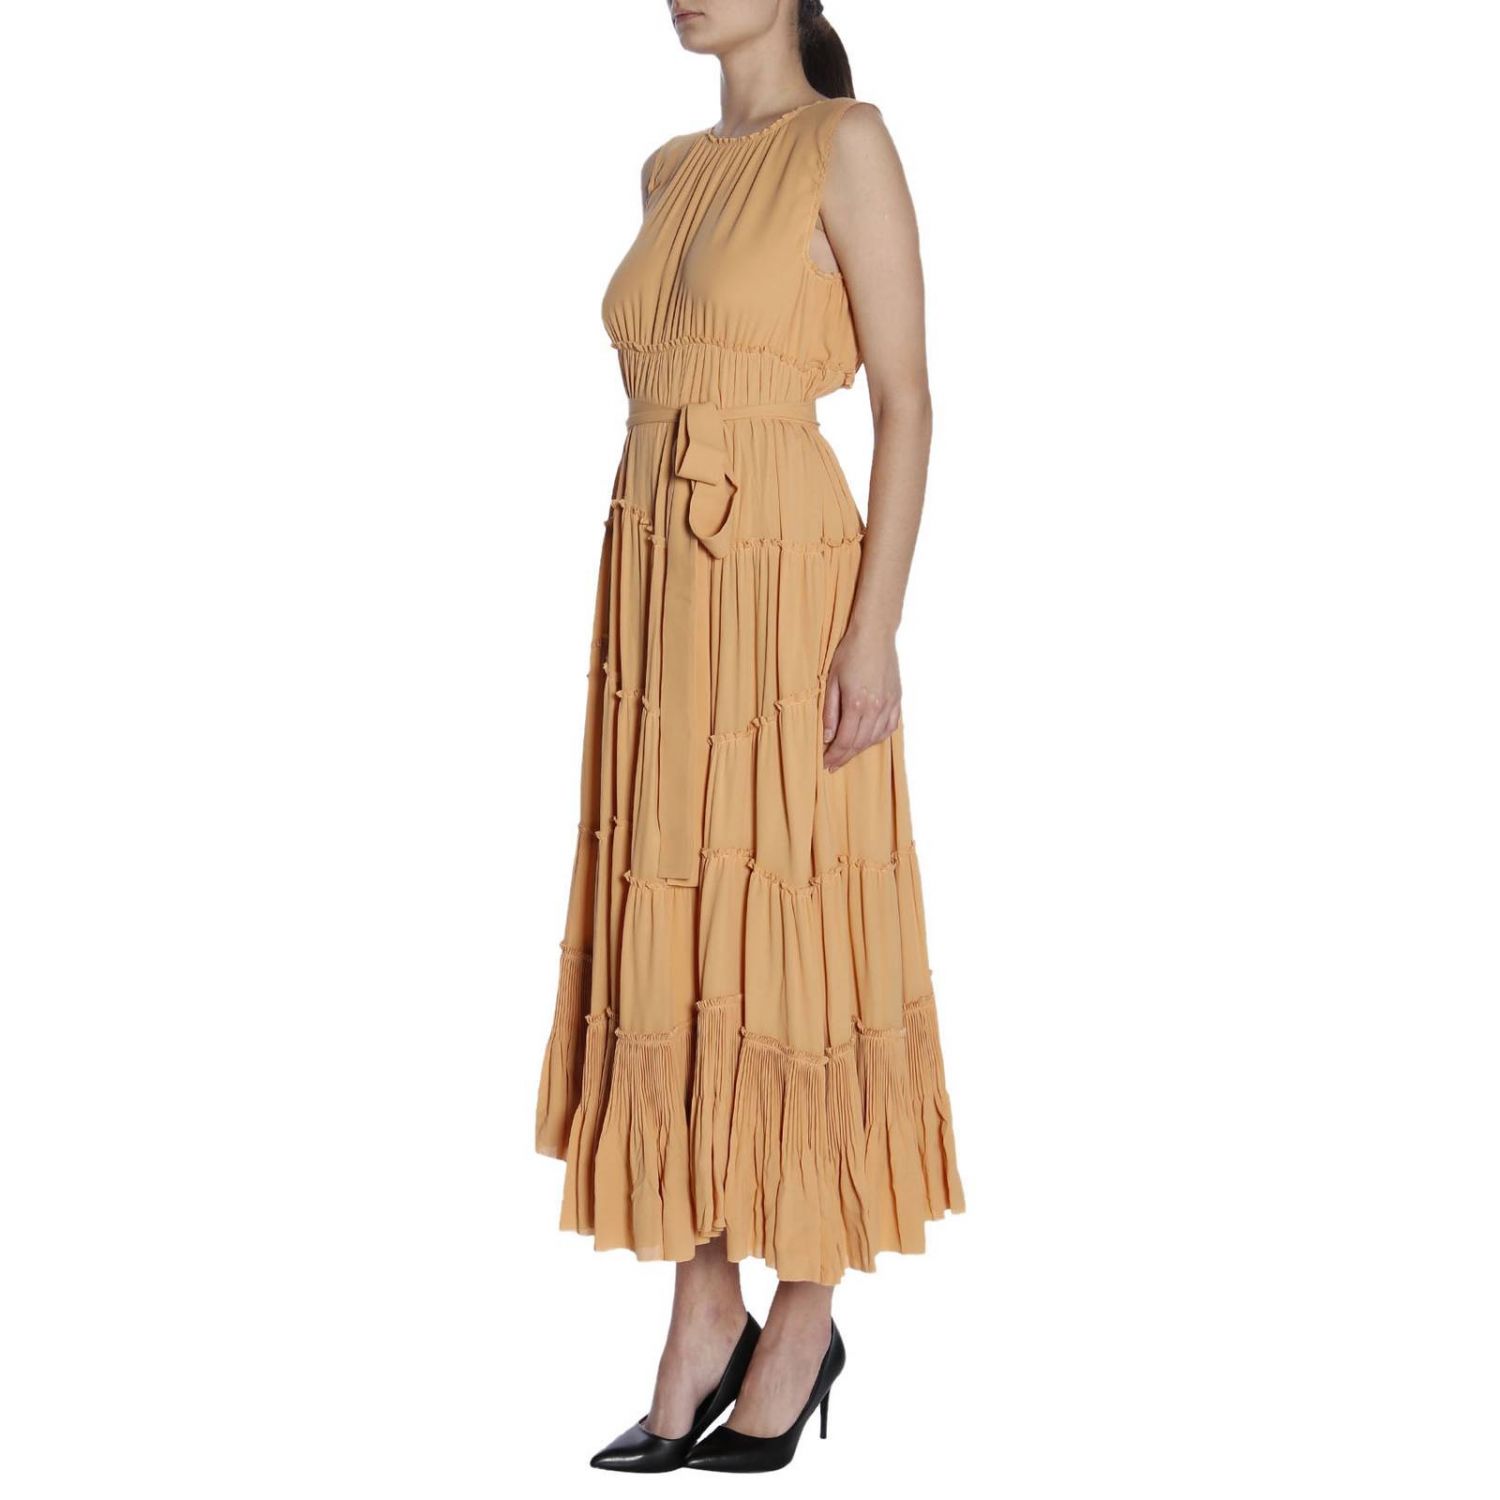 Bottega Veneta Outlet: dress for women - Peach | Bottega Veneta dress ...